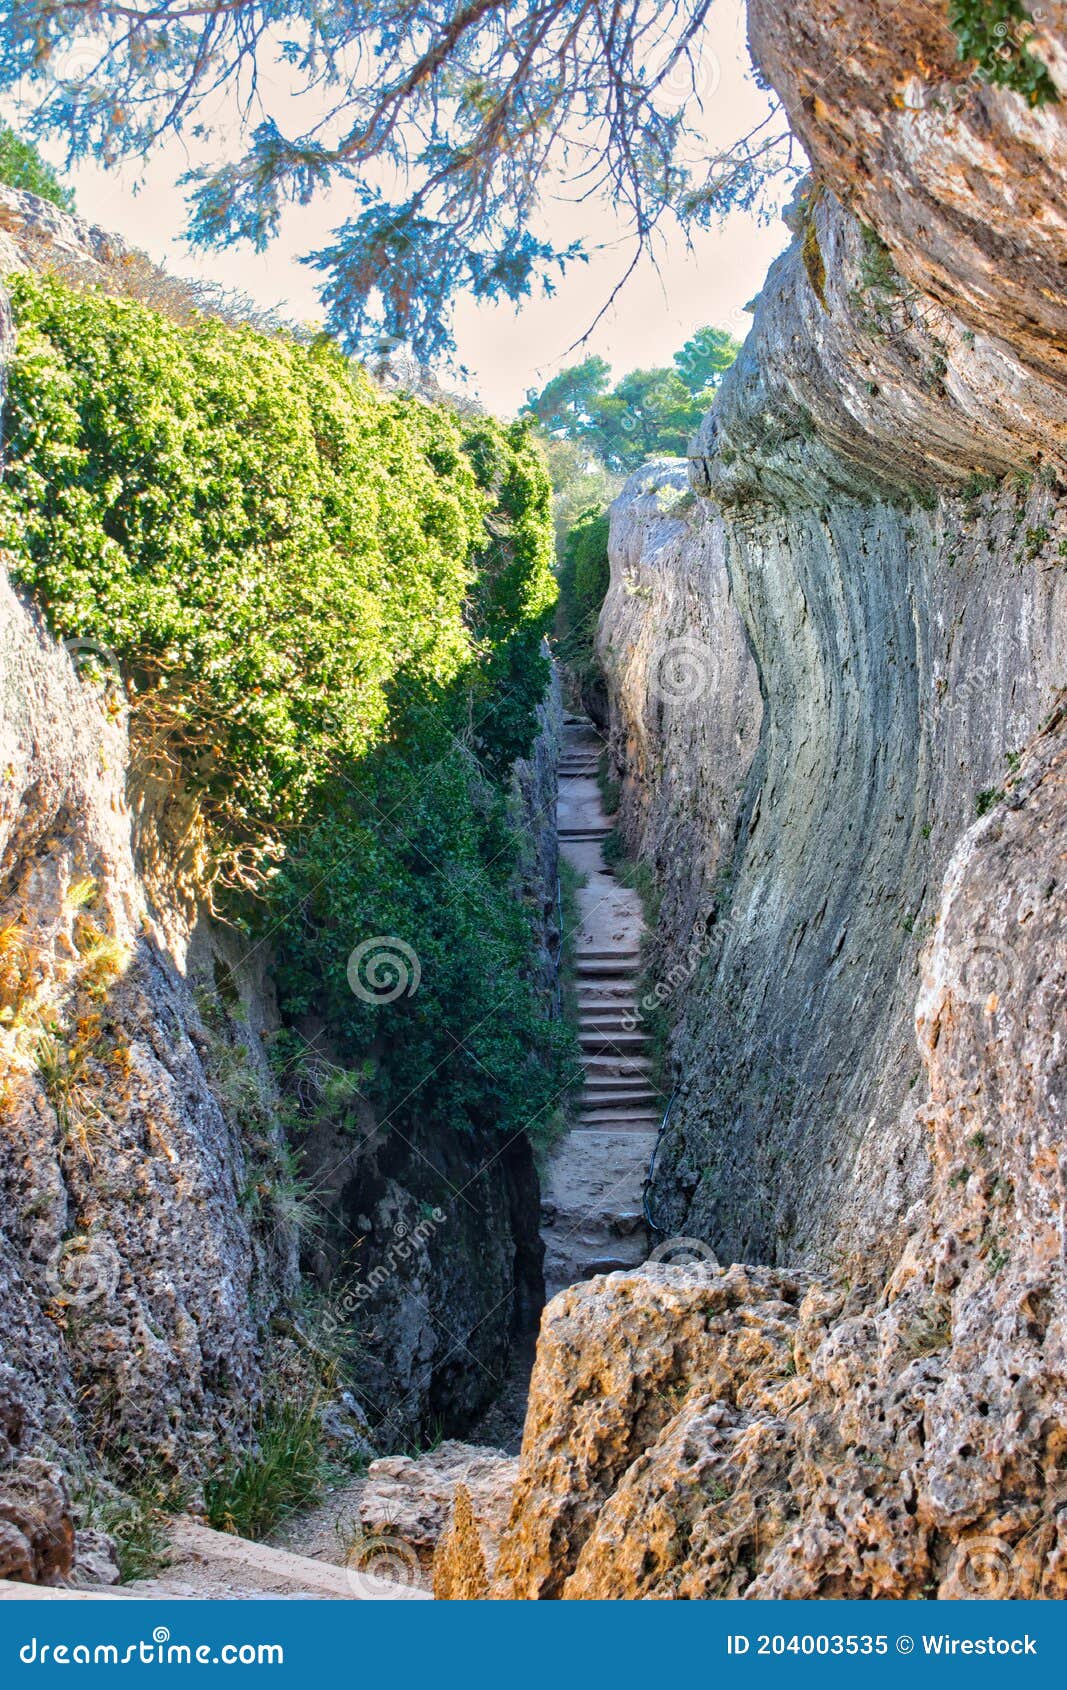 corridor between rocky walls and with stairs, called el tobogan in la ciudad encantada de cuenca